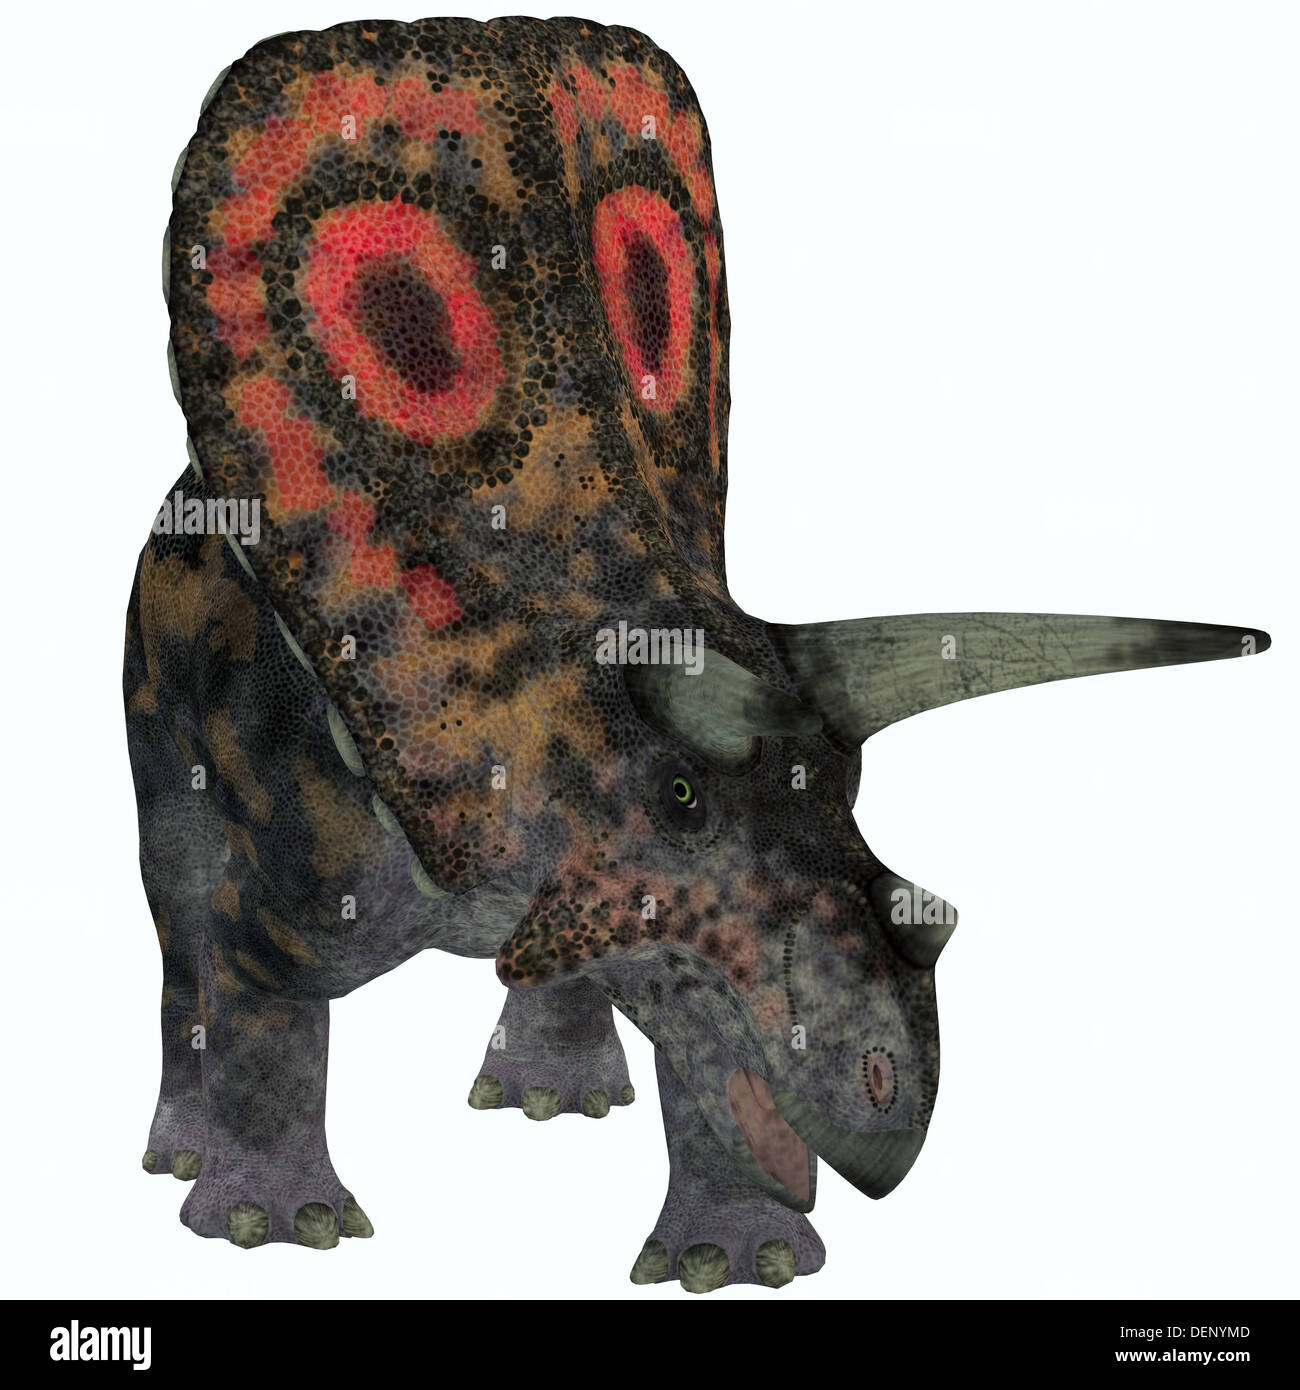 Torosaurus ont eu le plus de crânes de tout animal terrestre connue. C'est dinosaure herbivore à partir de la fin du Crétacé. Banque D'Images